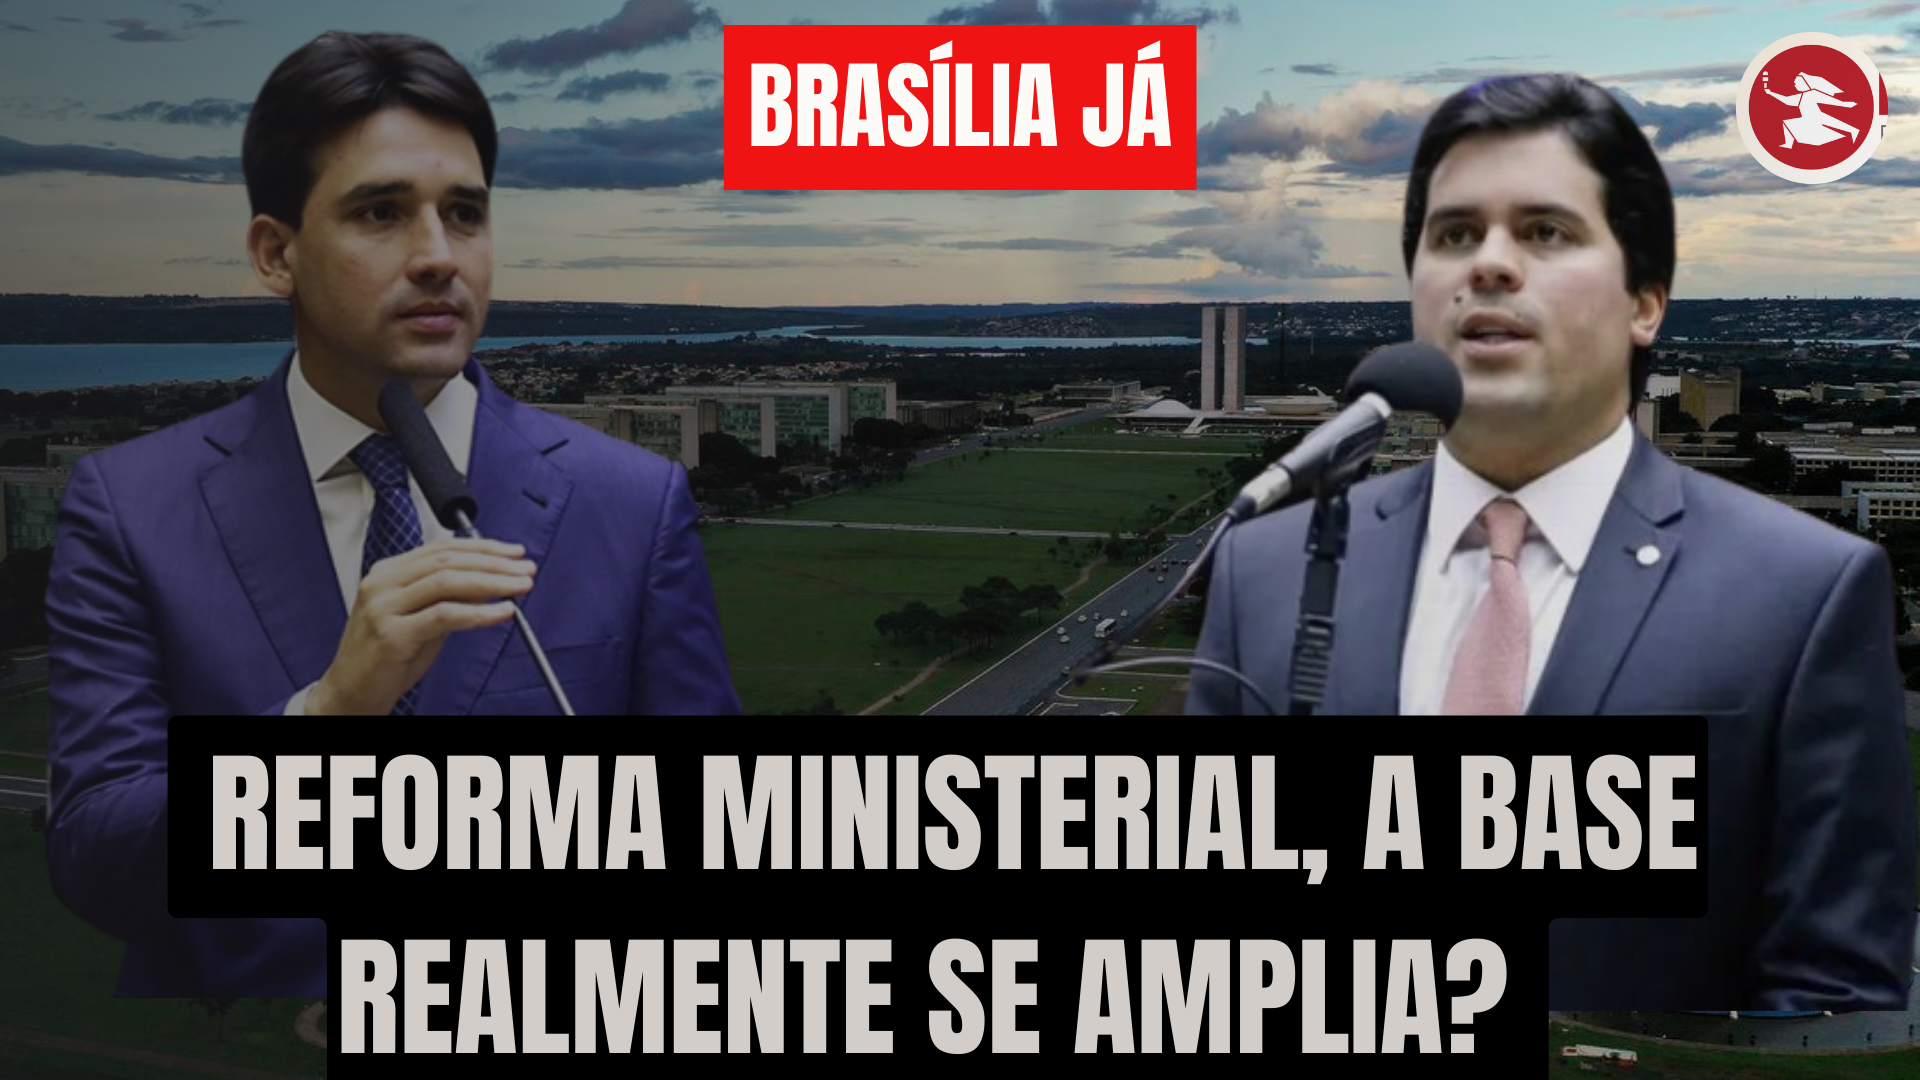 BRASÍLIA JÁ: A reforma ministerial foi seis por meia dúzia?